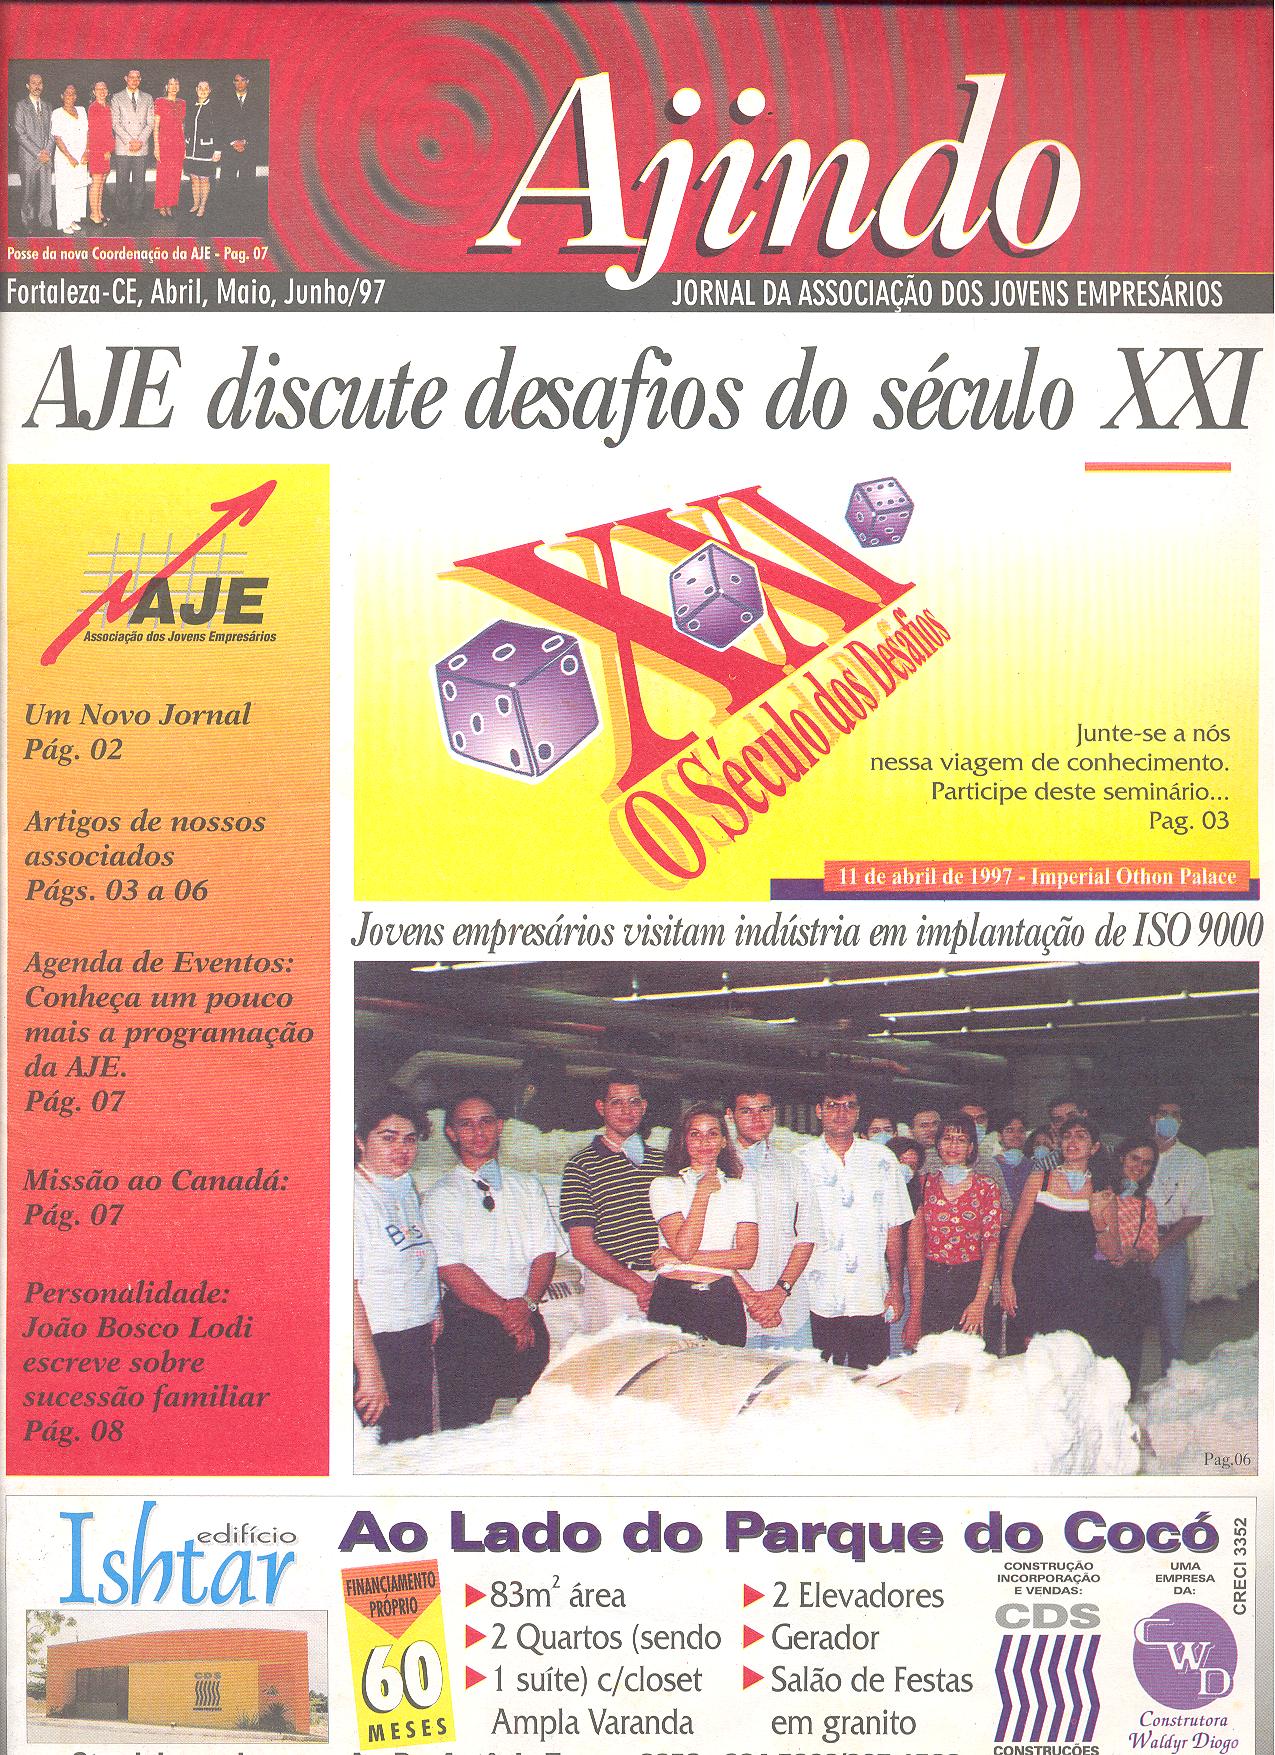 Informativo trimestral da da AJE Fortaleza – Ajindo de Abril, Maio e Junho de 1997